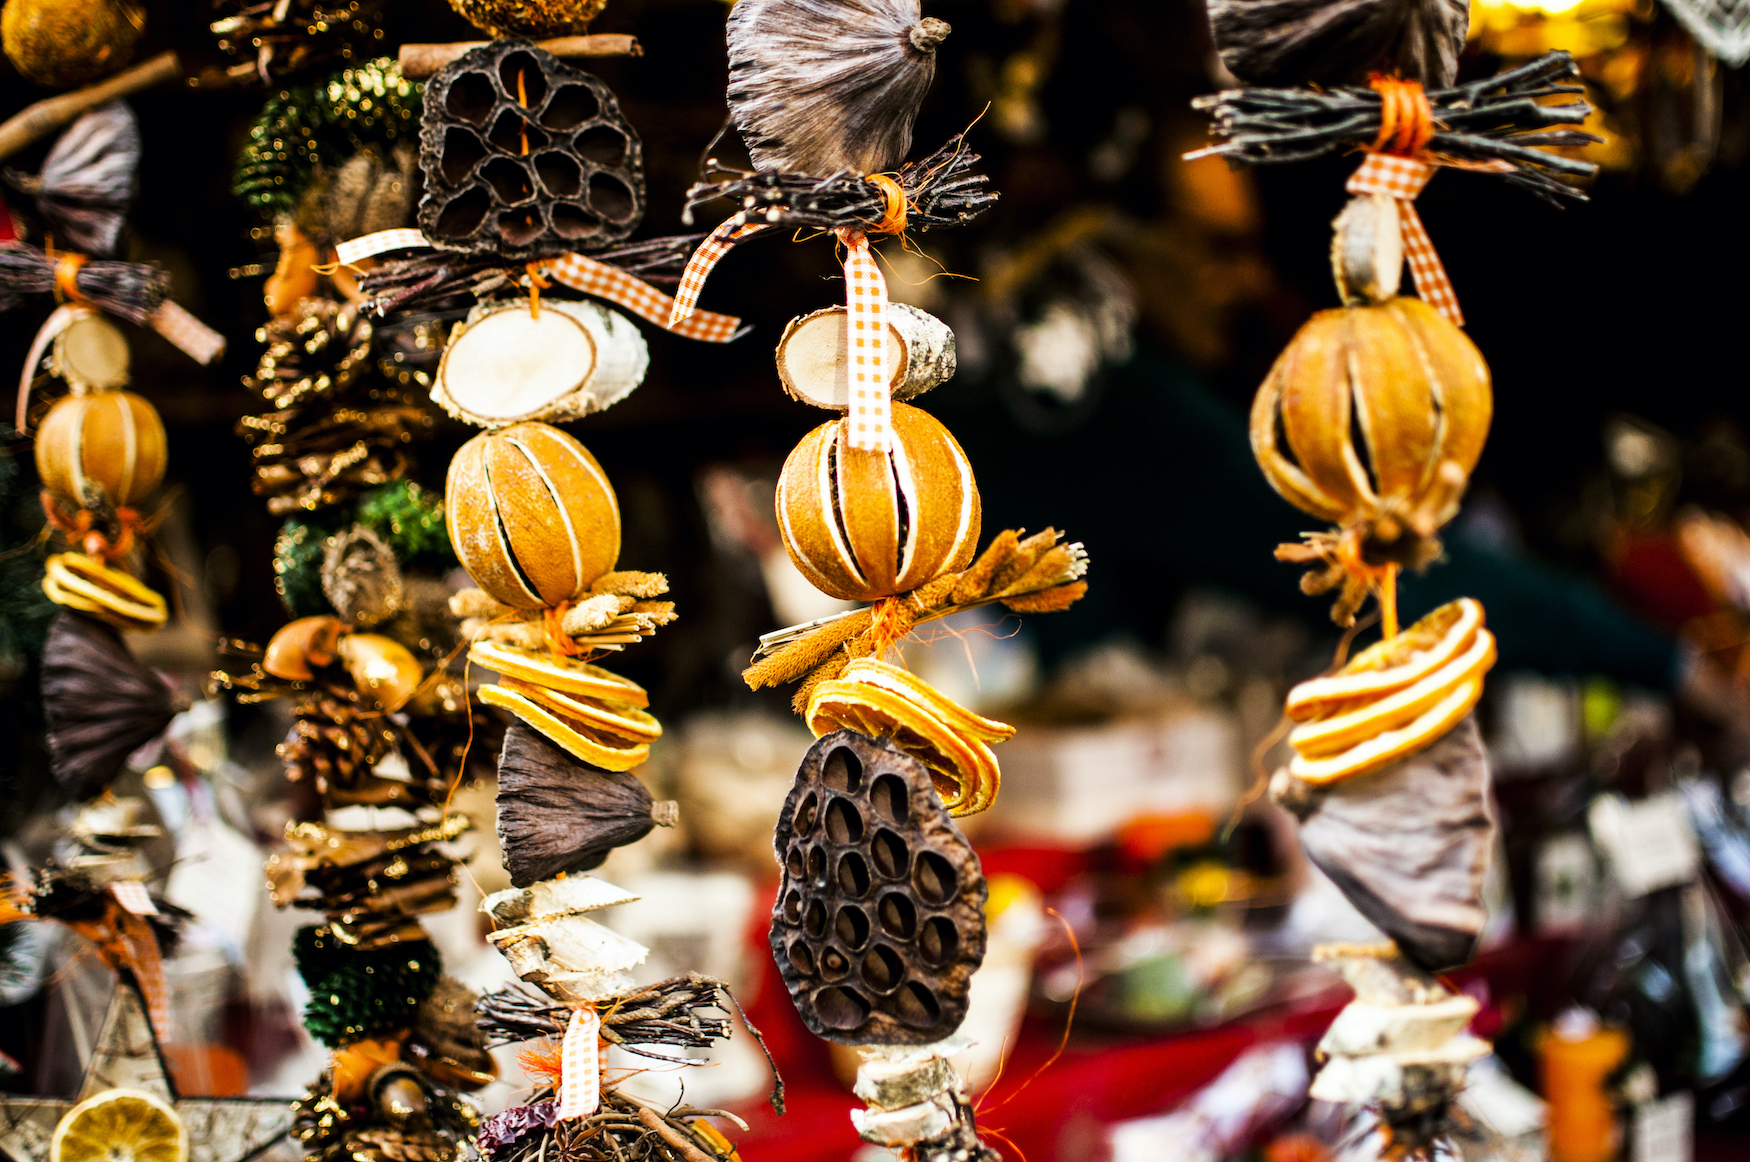 Weihnachtsschmuck aus Orangen und anderen Elementen aus der Natur hängen an einem Stand auf dem Weihnachtsmarkt.